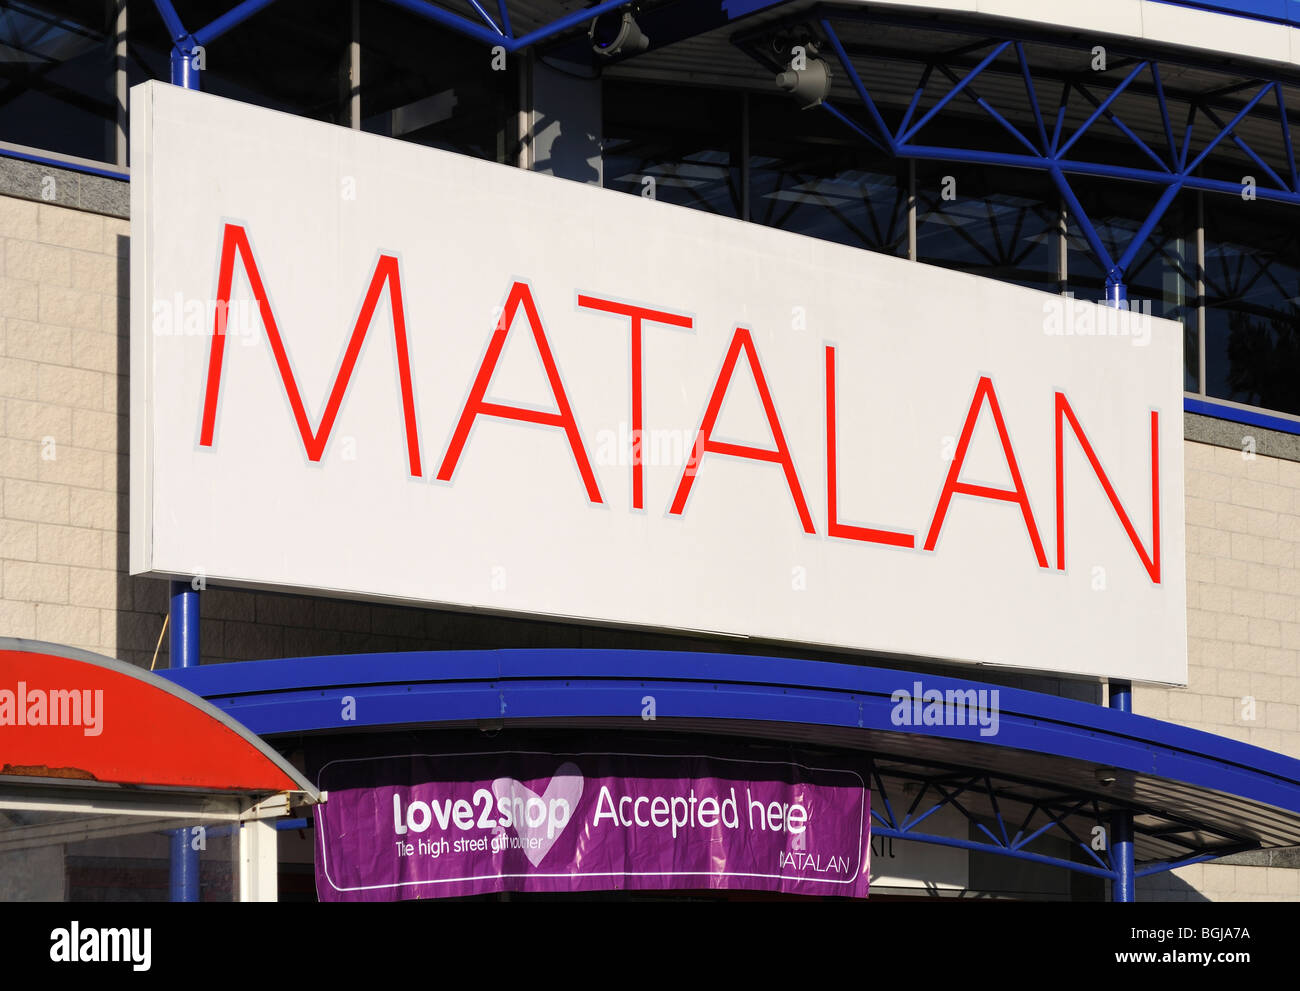 a matalan store sign, uk Stock Photo